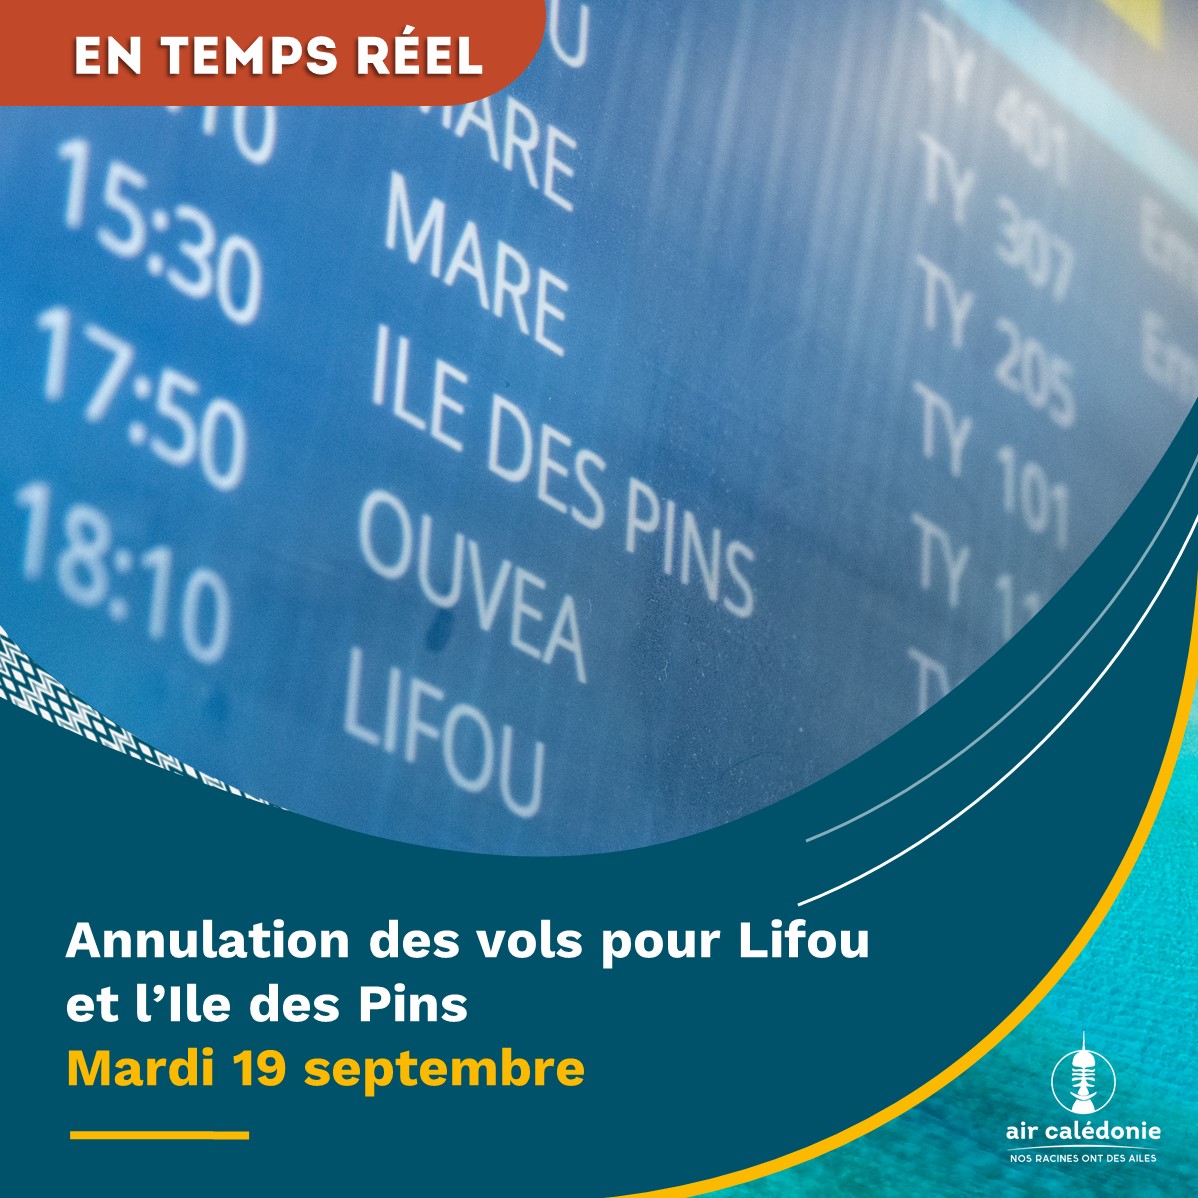 Annulation des vols pour Lifou et l'Ile des Pins le mardi 19 septembre